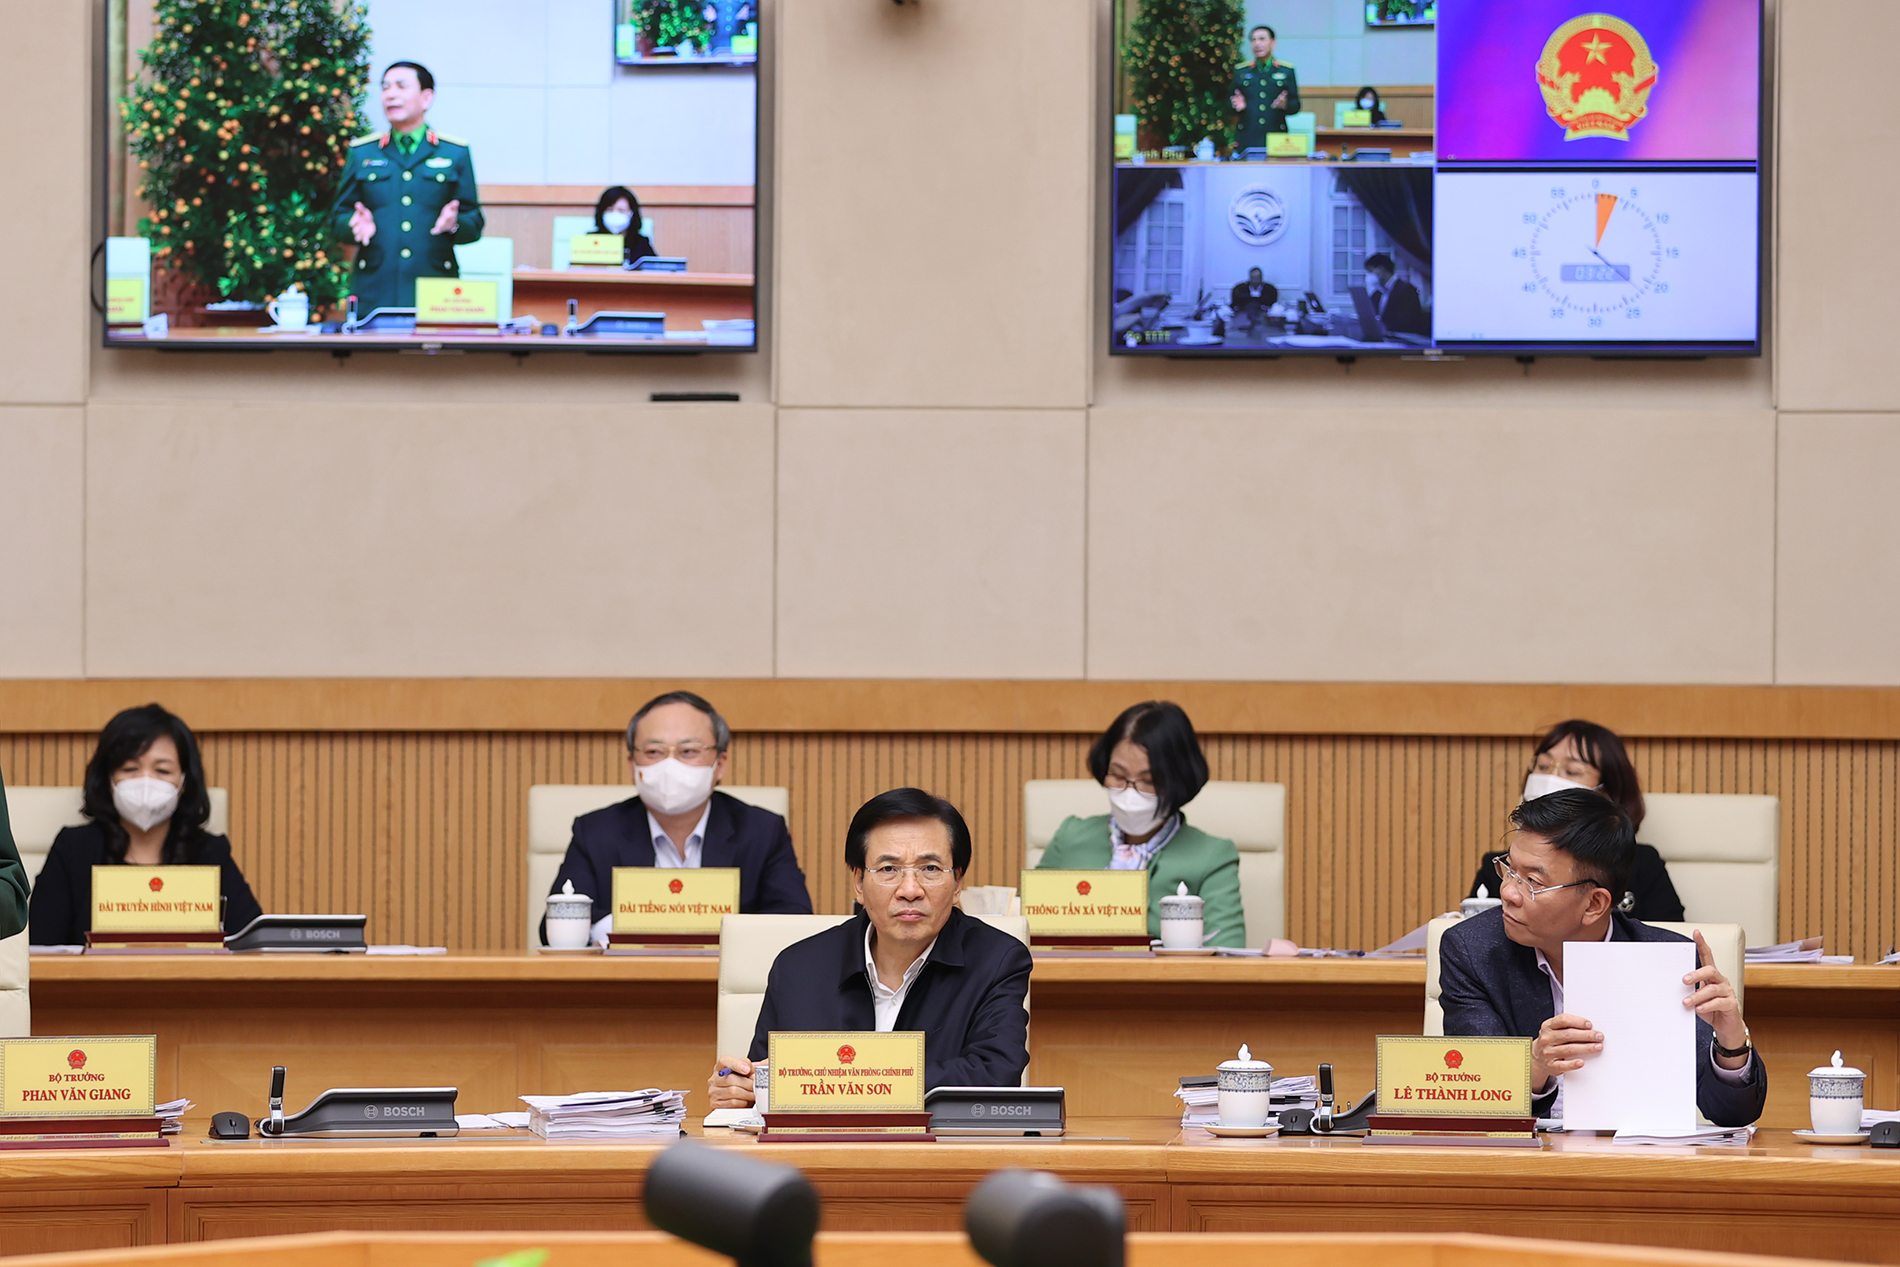 Loạt ảnh: Thủ tướng chủ trì Phiên họp chính phủ chuyên đề về xây dựng pháp luật - Ảnh 12.